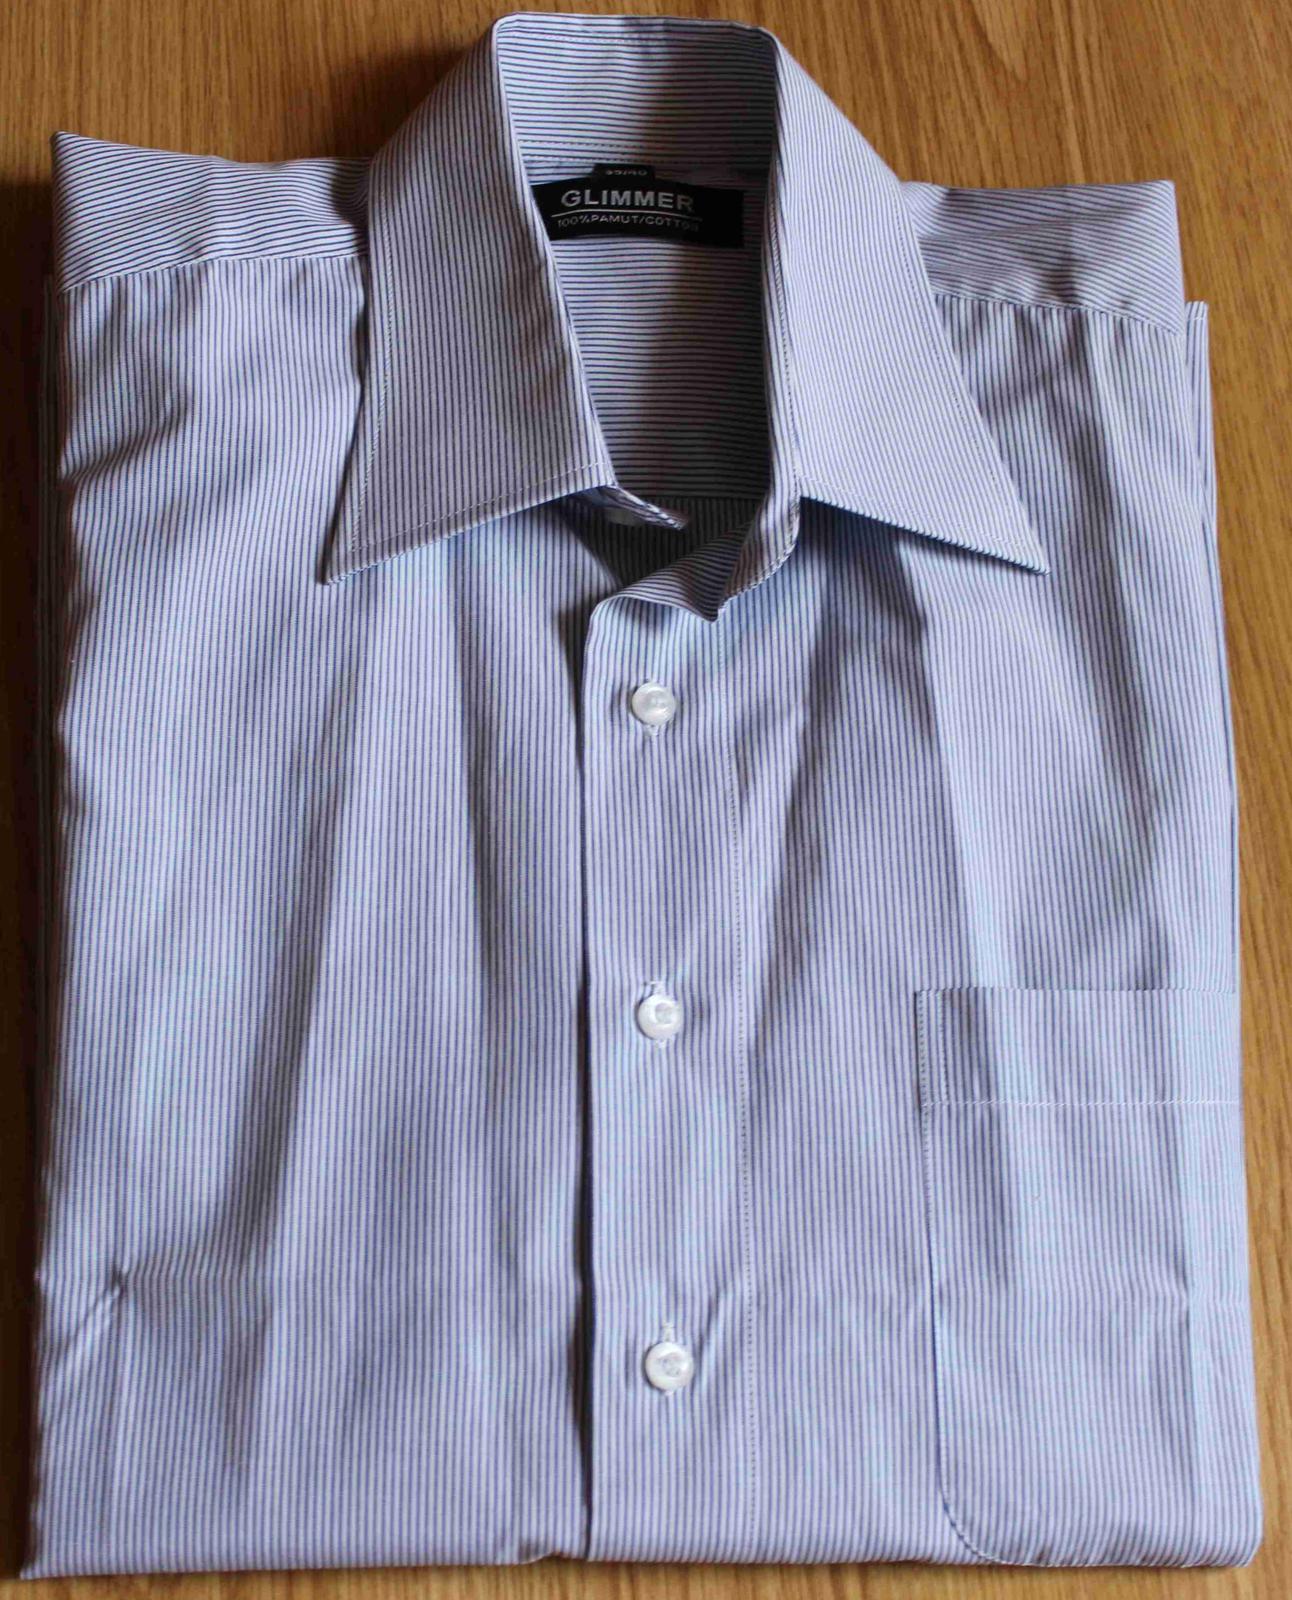 Pánska košeľa, nenosená - Obrázok č. 1